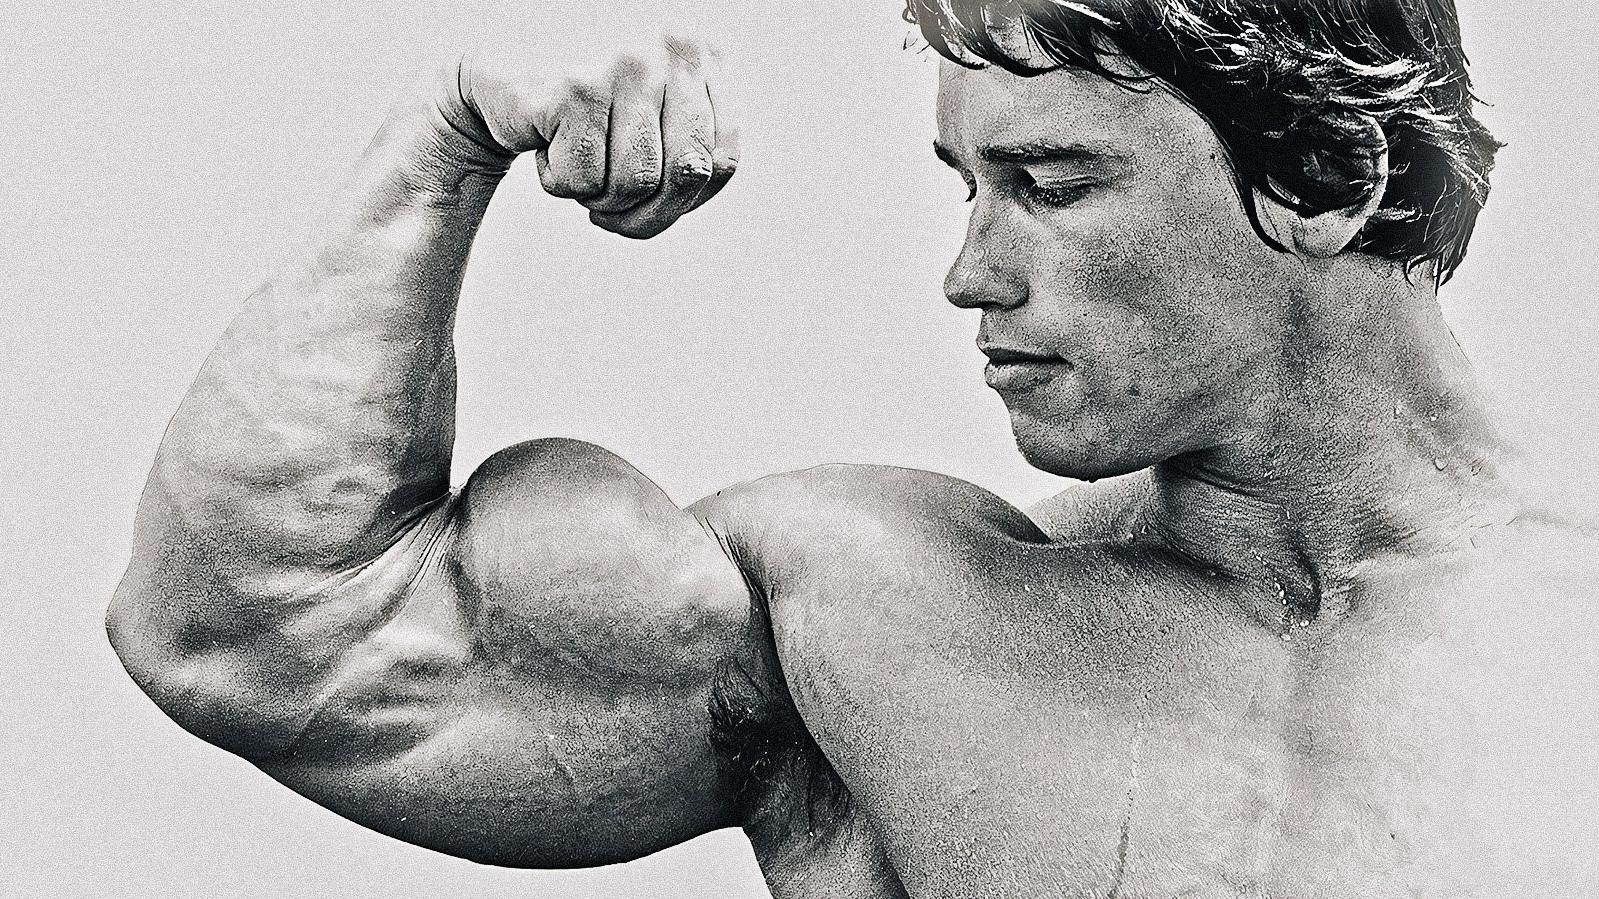 Uomo d'acciaio, ovvero Arnold Schwarzenegger prima di Arnold Schwarzenegger